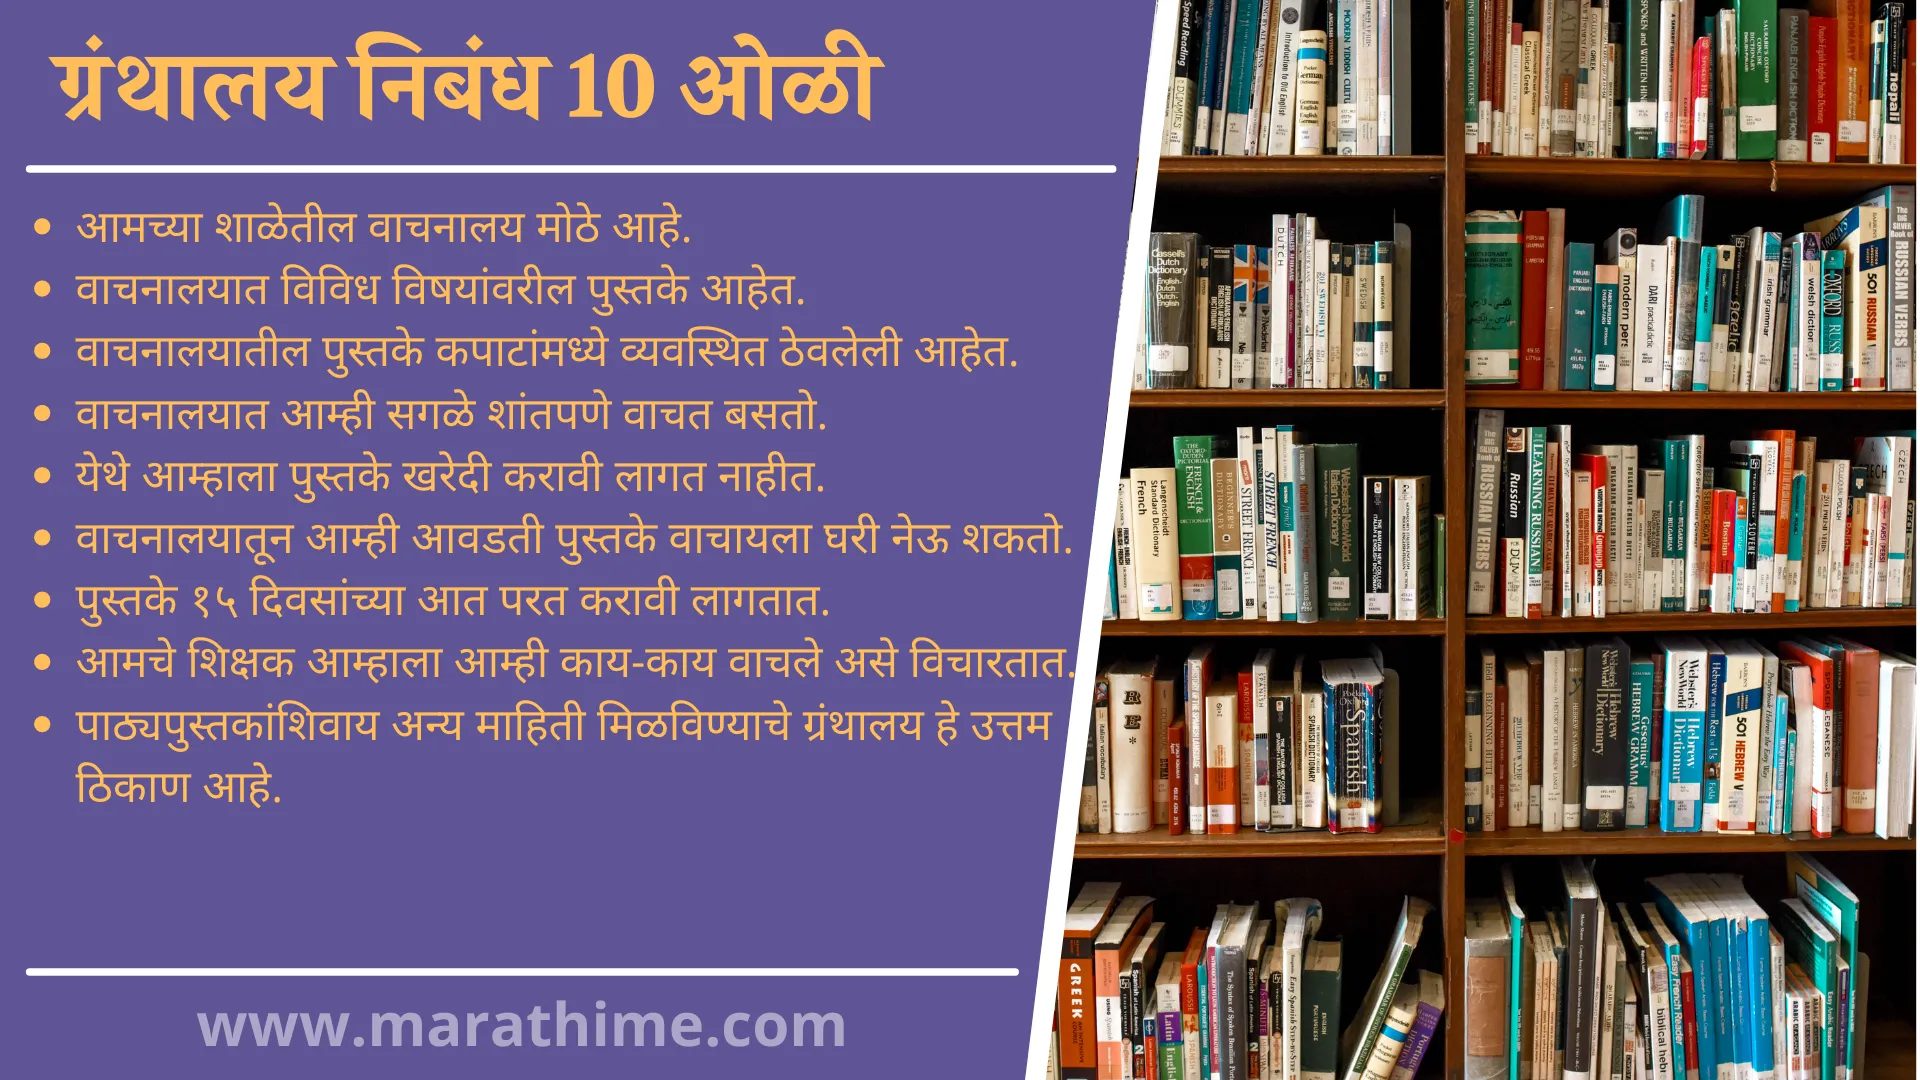 ग्रंथालय निबंध 10 ओळी, 10 Lines On Library in Marathi